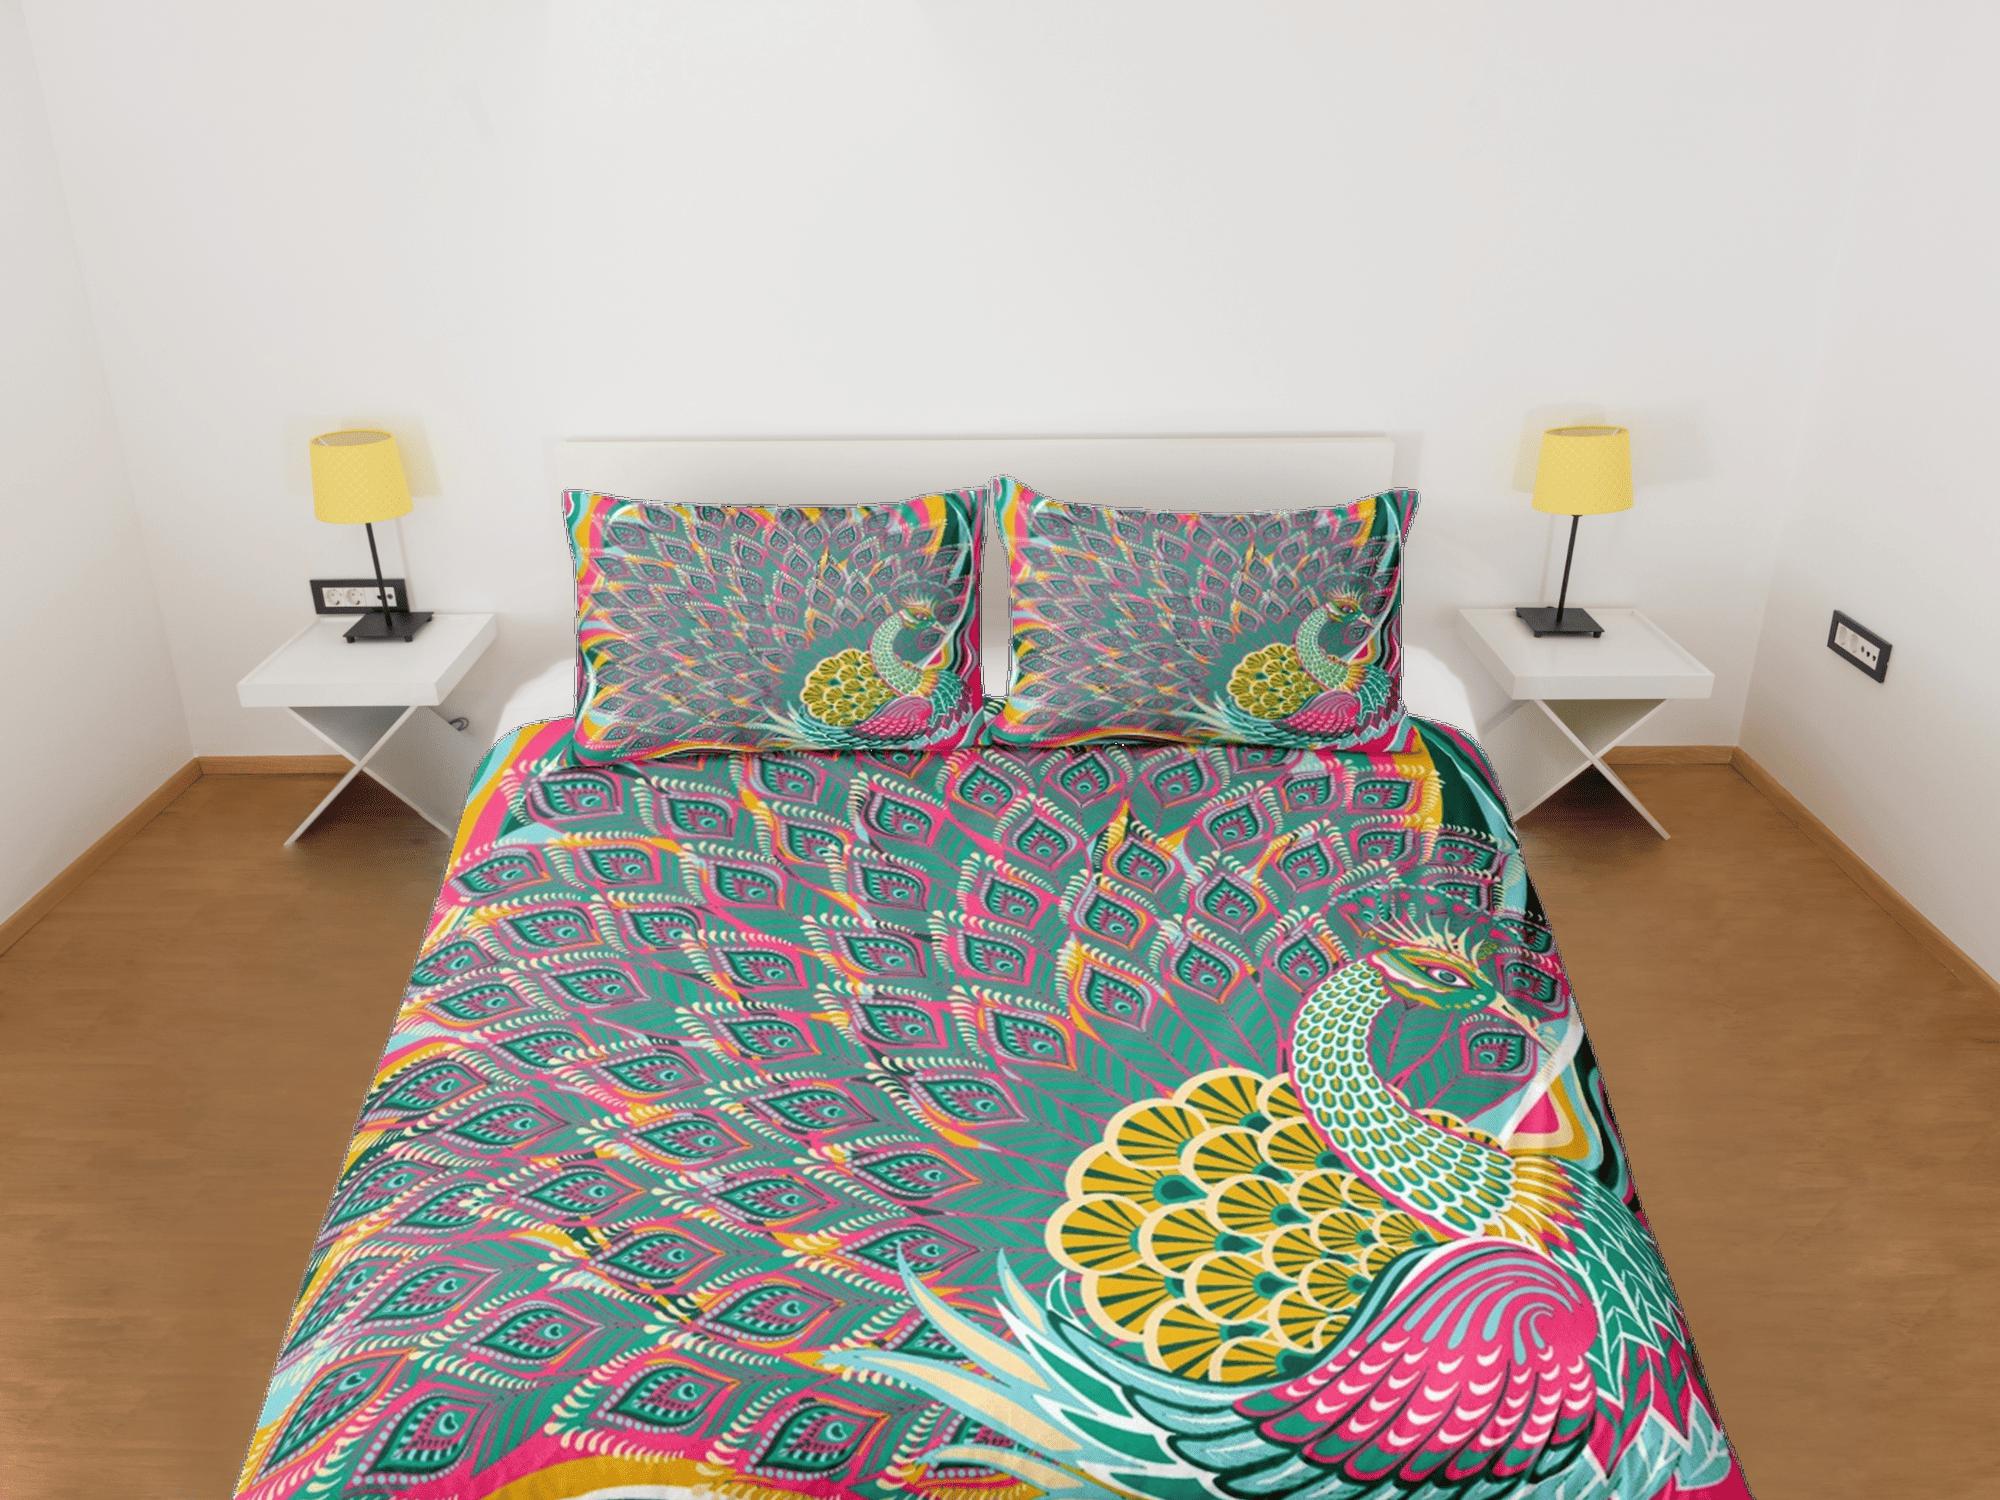 daintyduvet Colorful peacock decor aesthetic bedding set full, luxury duvet cover queen, king, boho duvet, designer bedding, maximalist bedspread